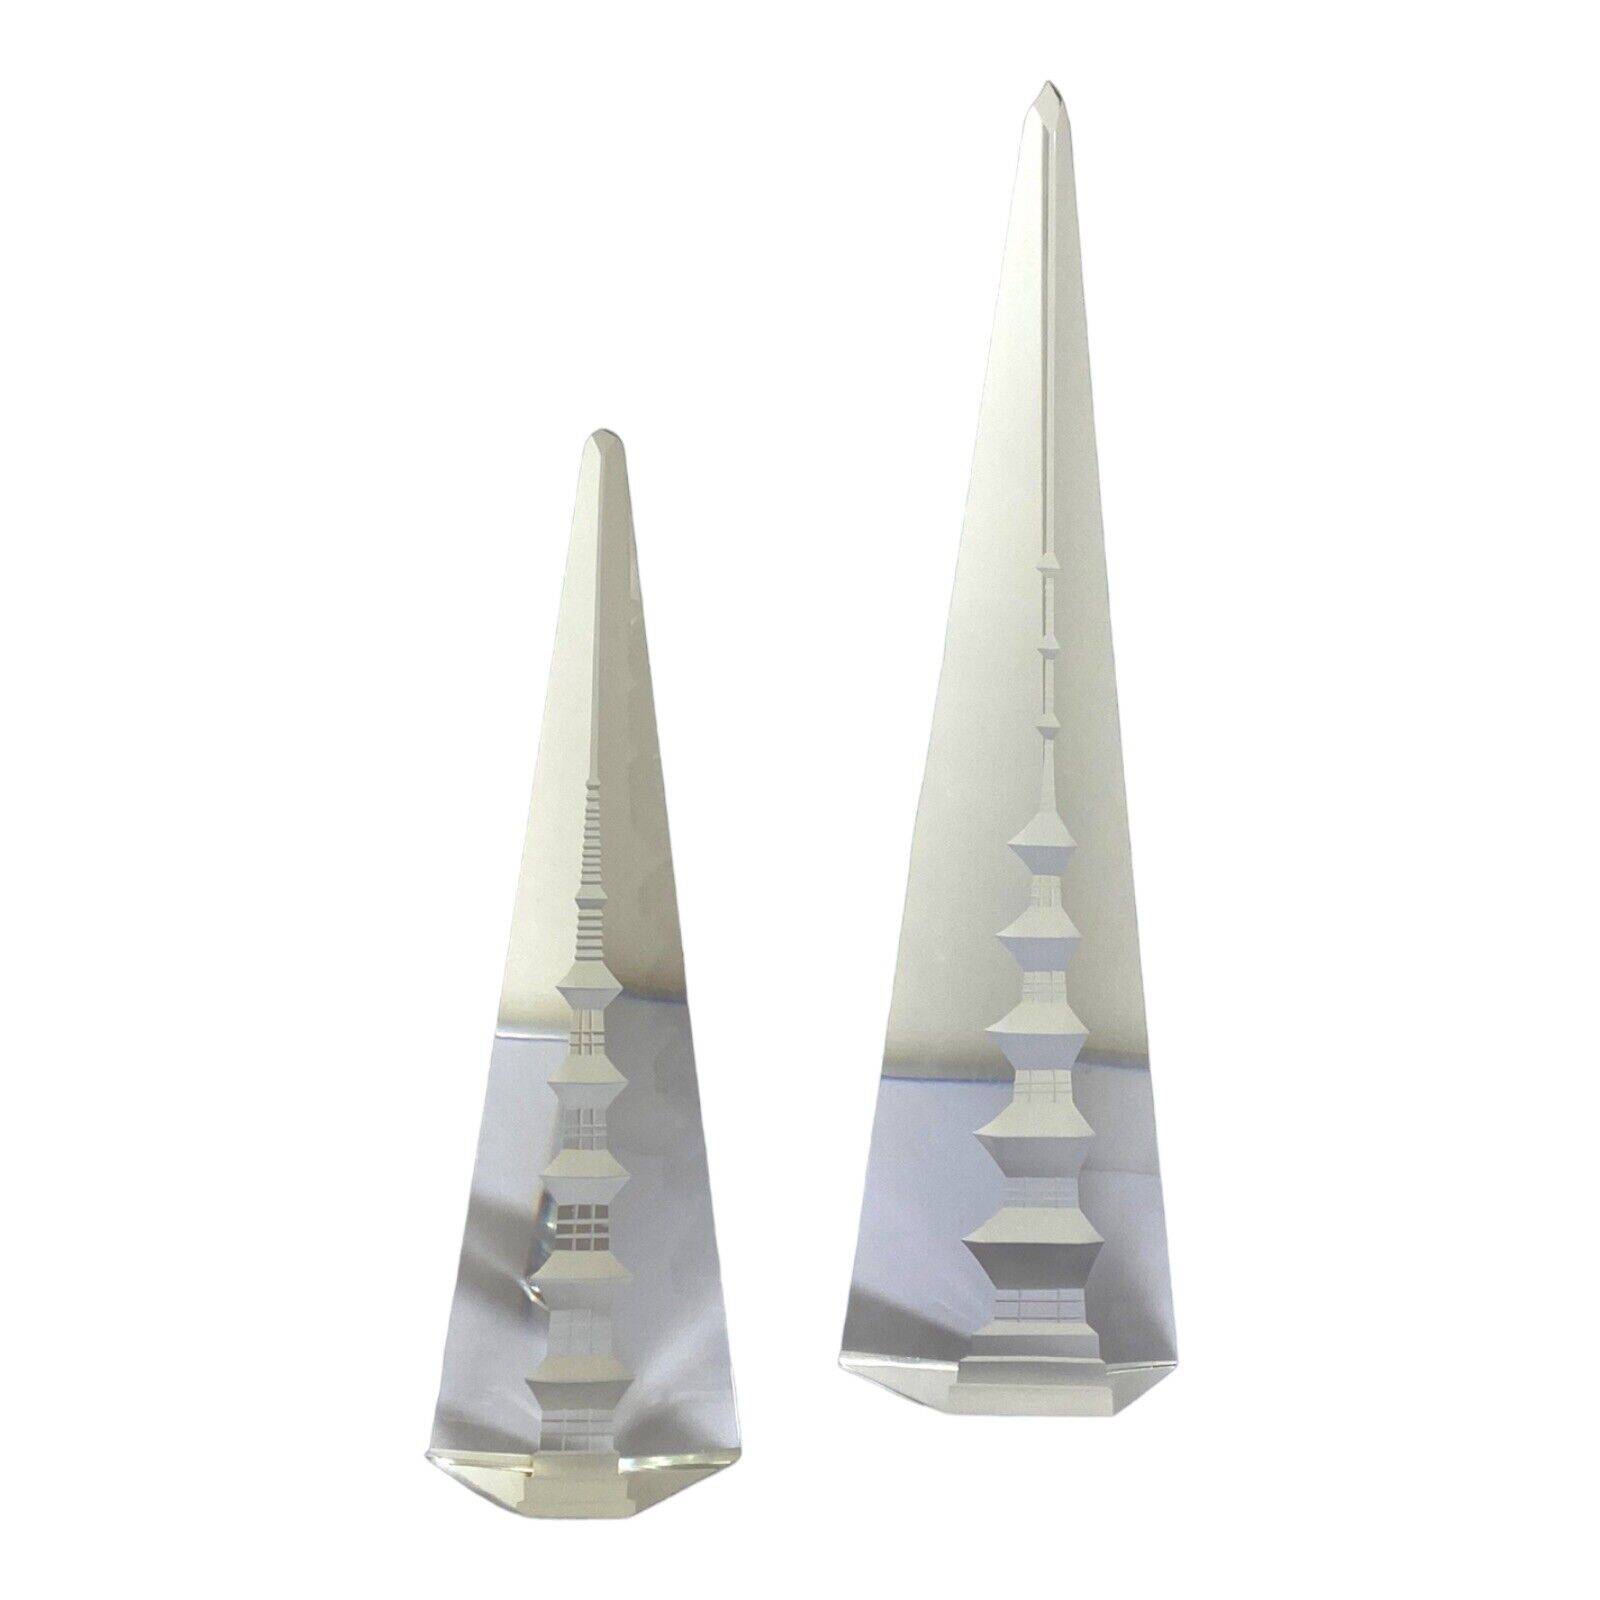 Rare Pair Of Pagoda Towers Hand Cut Obelisk Crystal Reverse Cut 8.5 & 12”